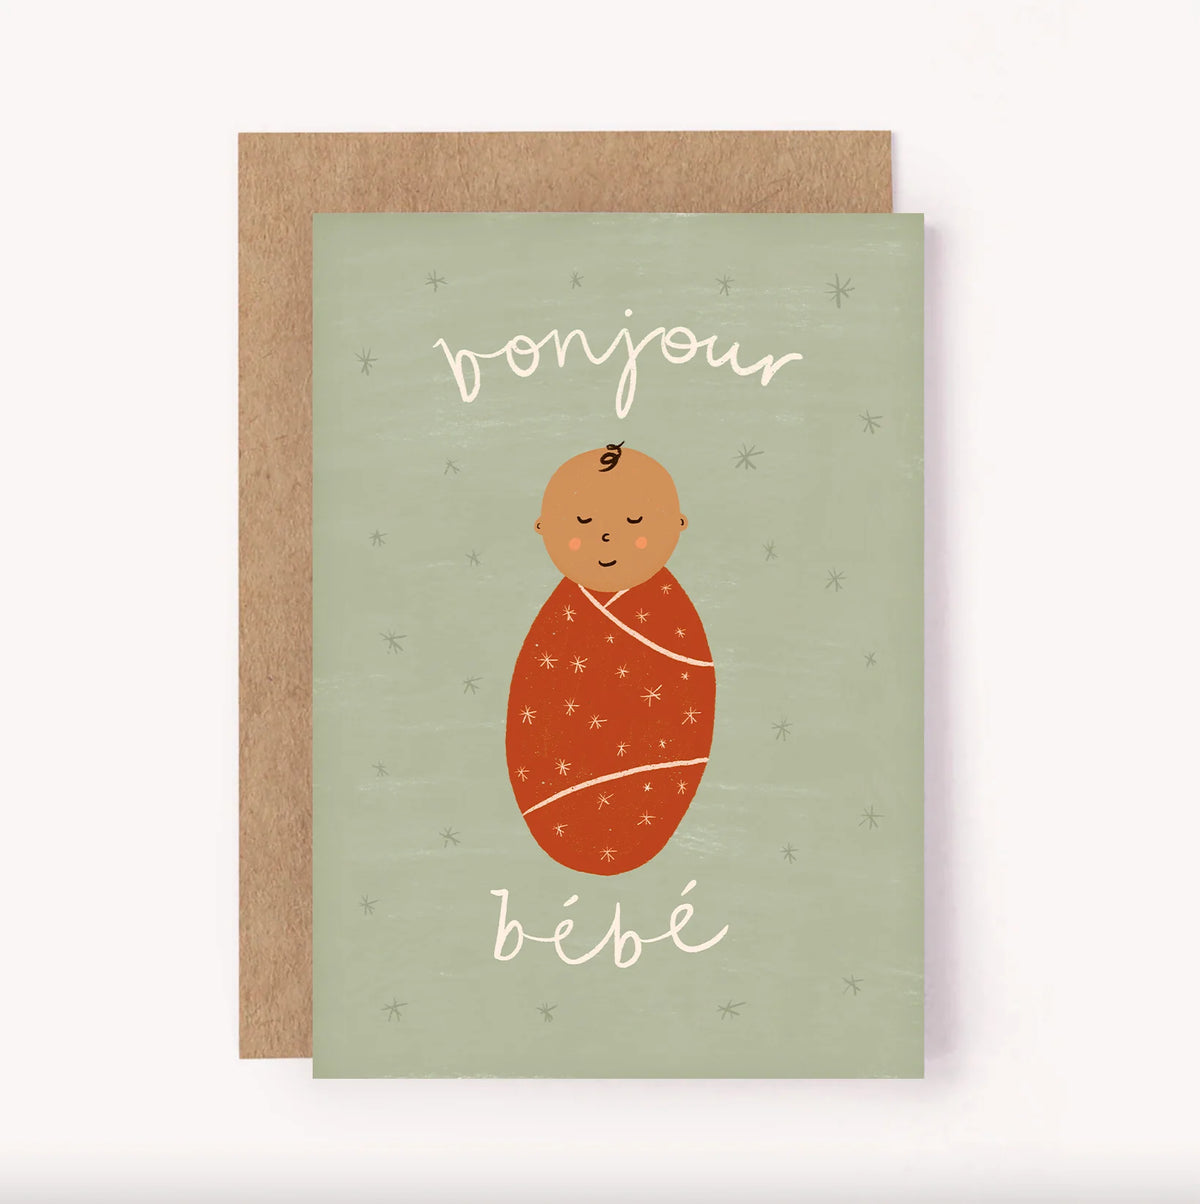 lauren sissons new baby card - bonjour bebe